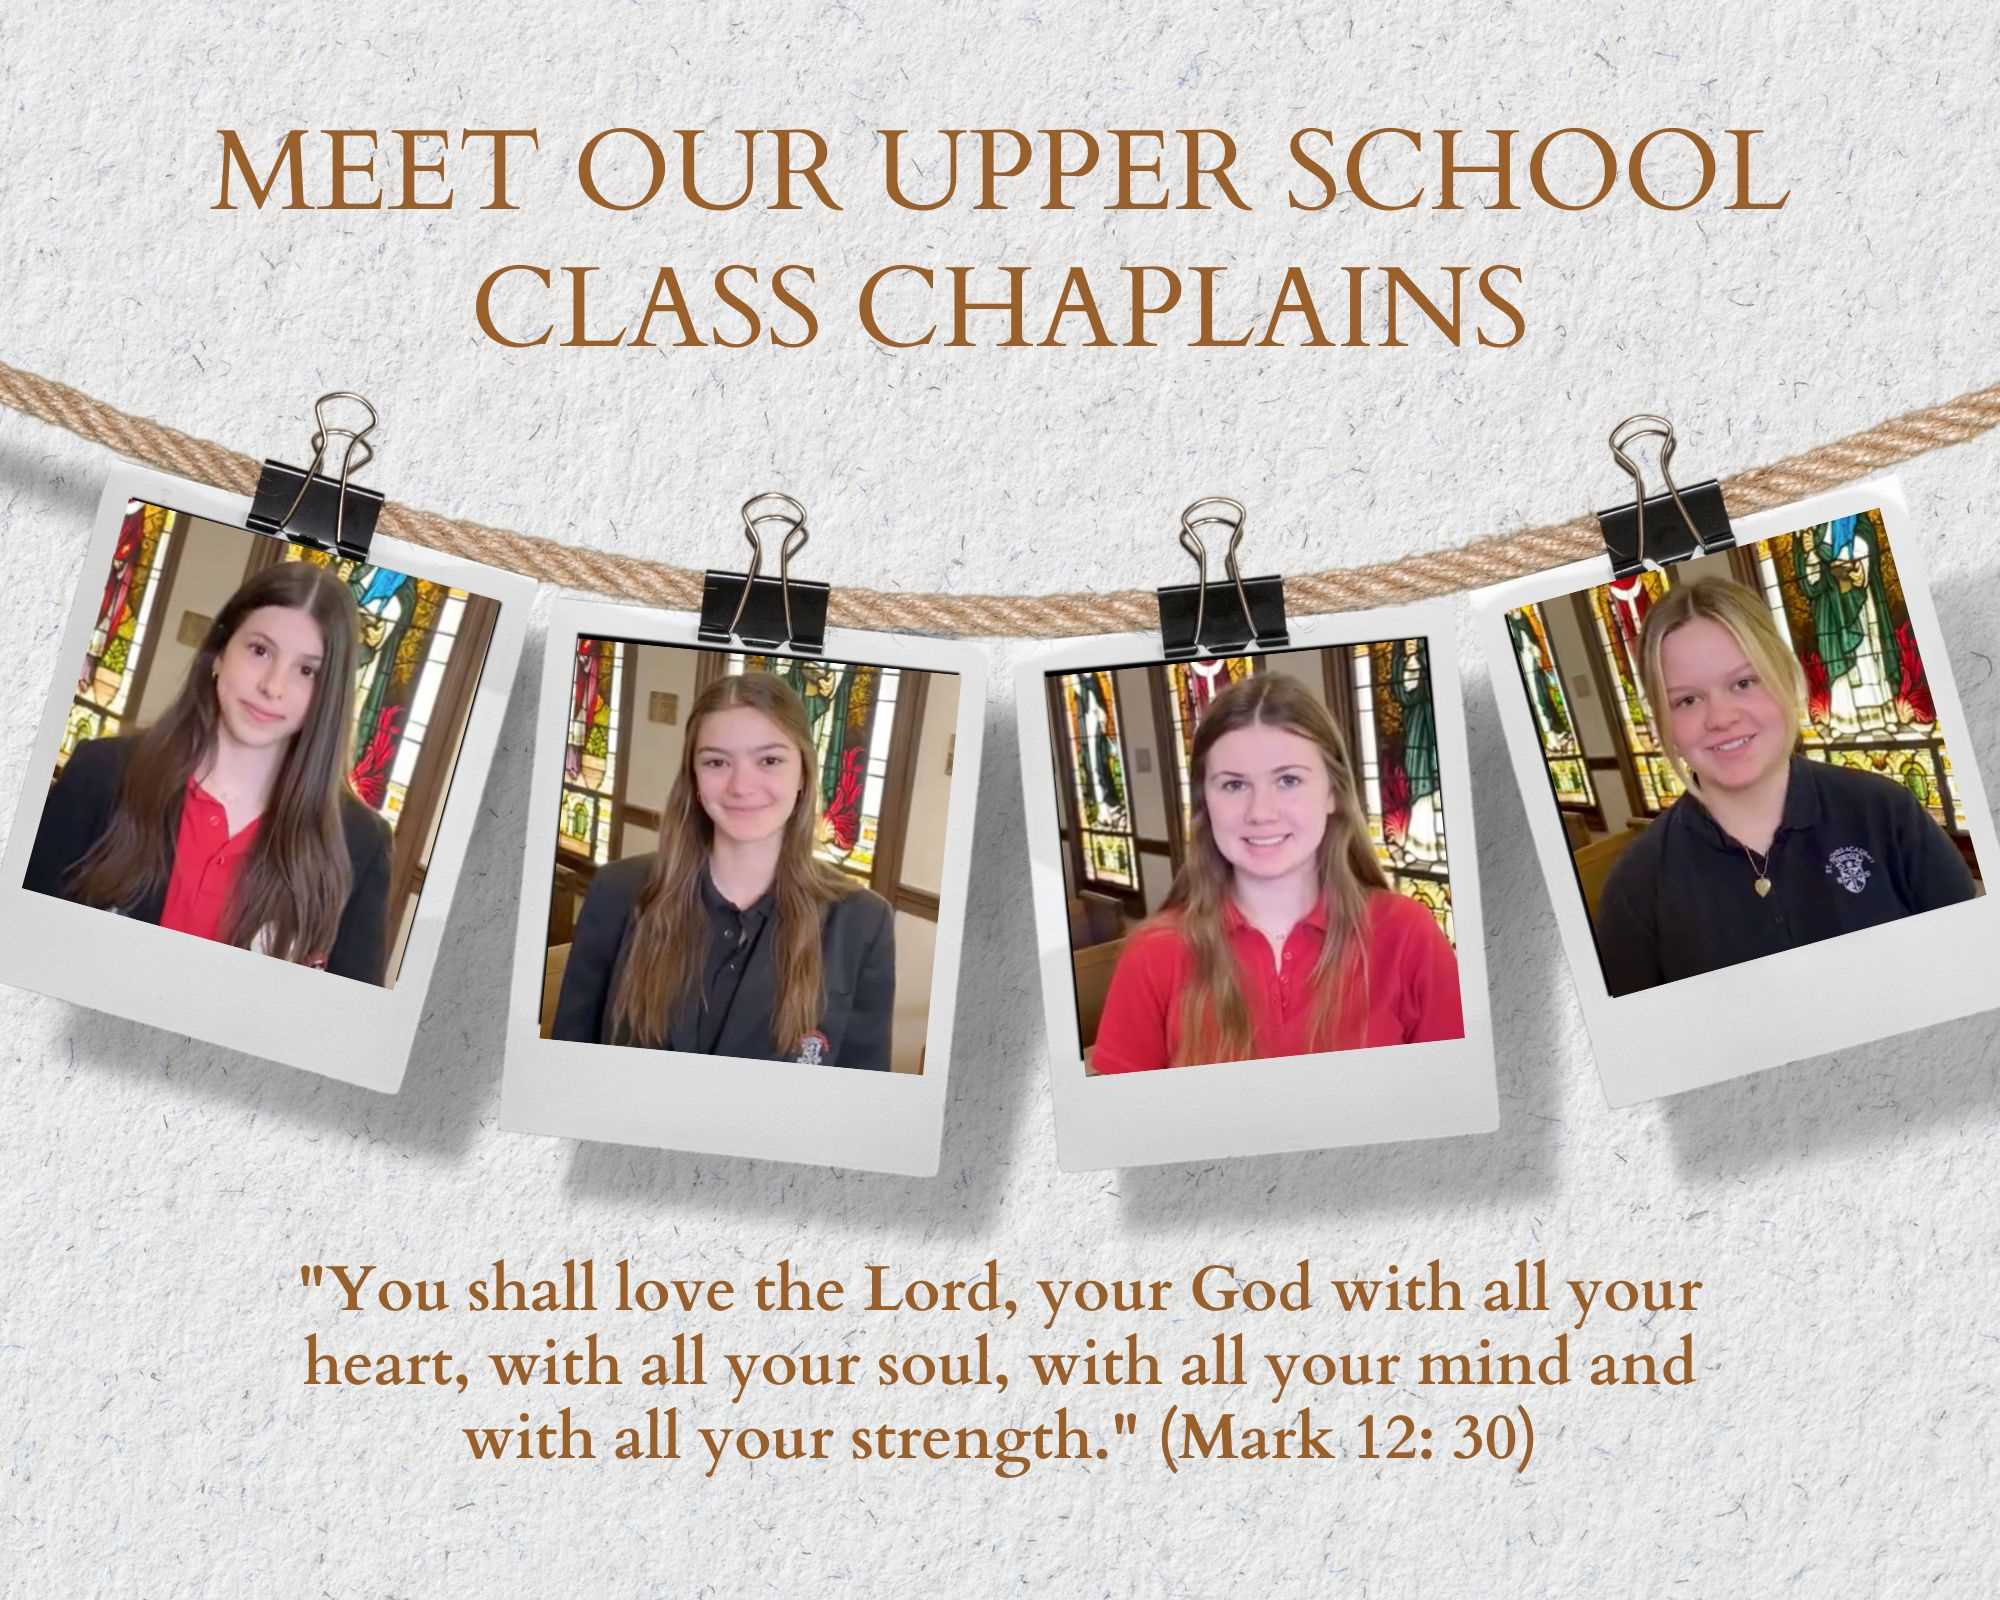 Meet Our Upper School Class Chaplains